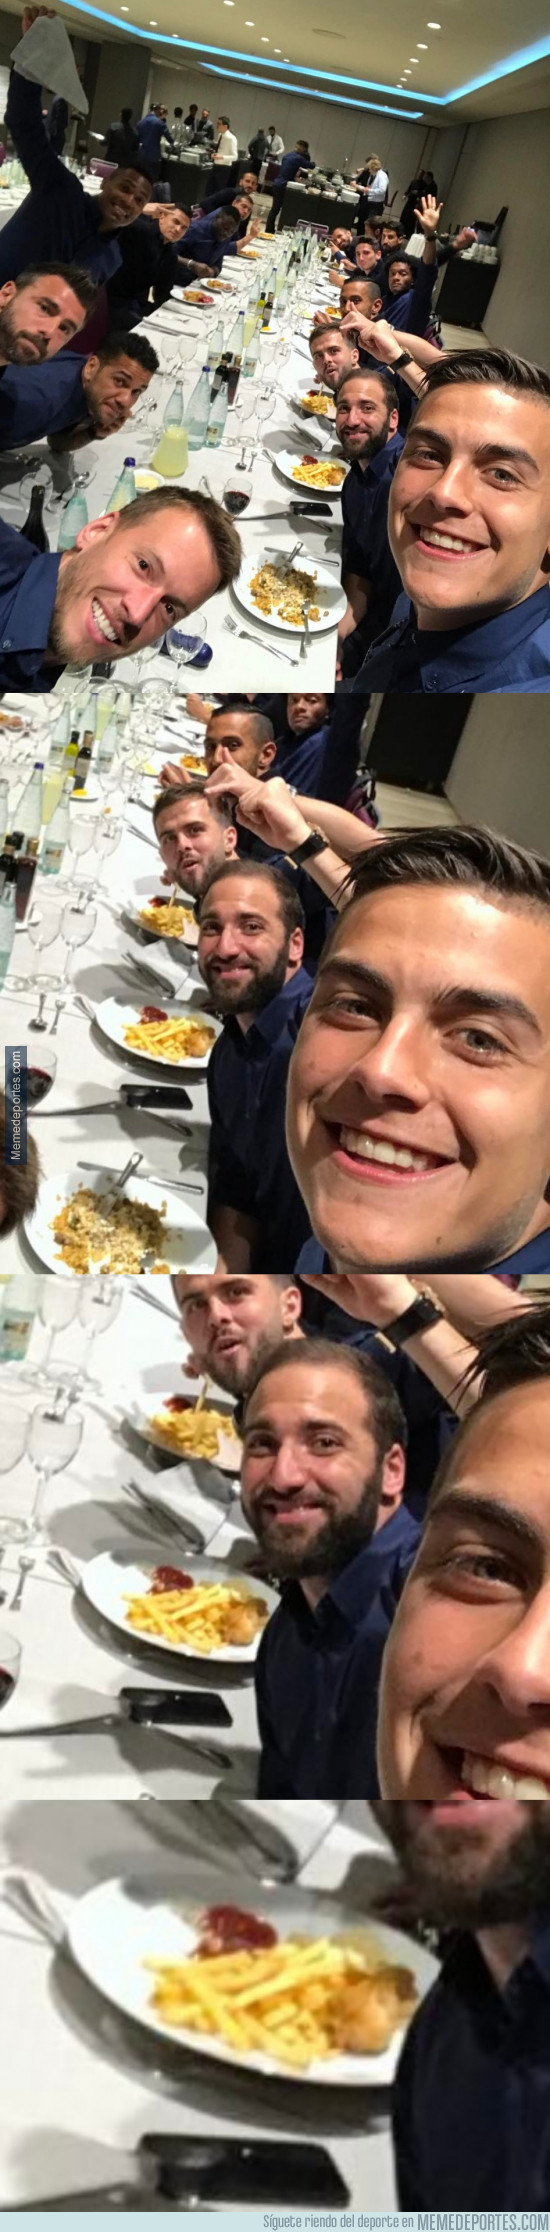 969463 - Higuaín troleado en Instagram tras descubrirse su banquete post-partido 100% saludable